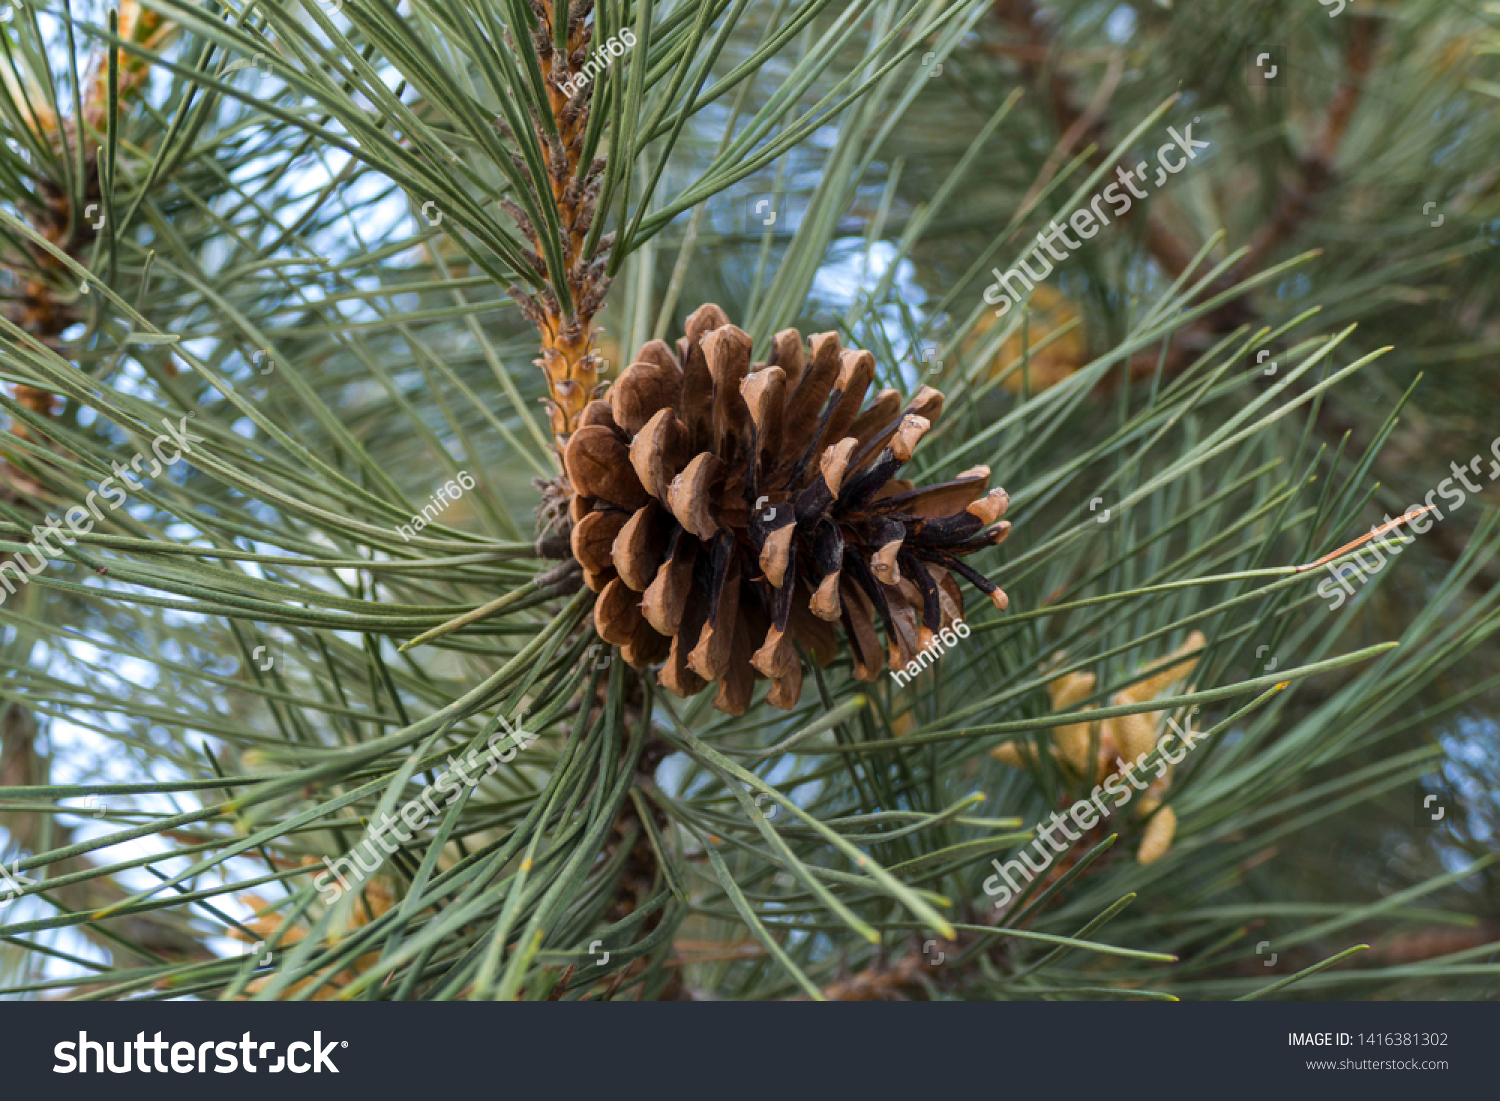 pine cones on pine trees, #1416381302